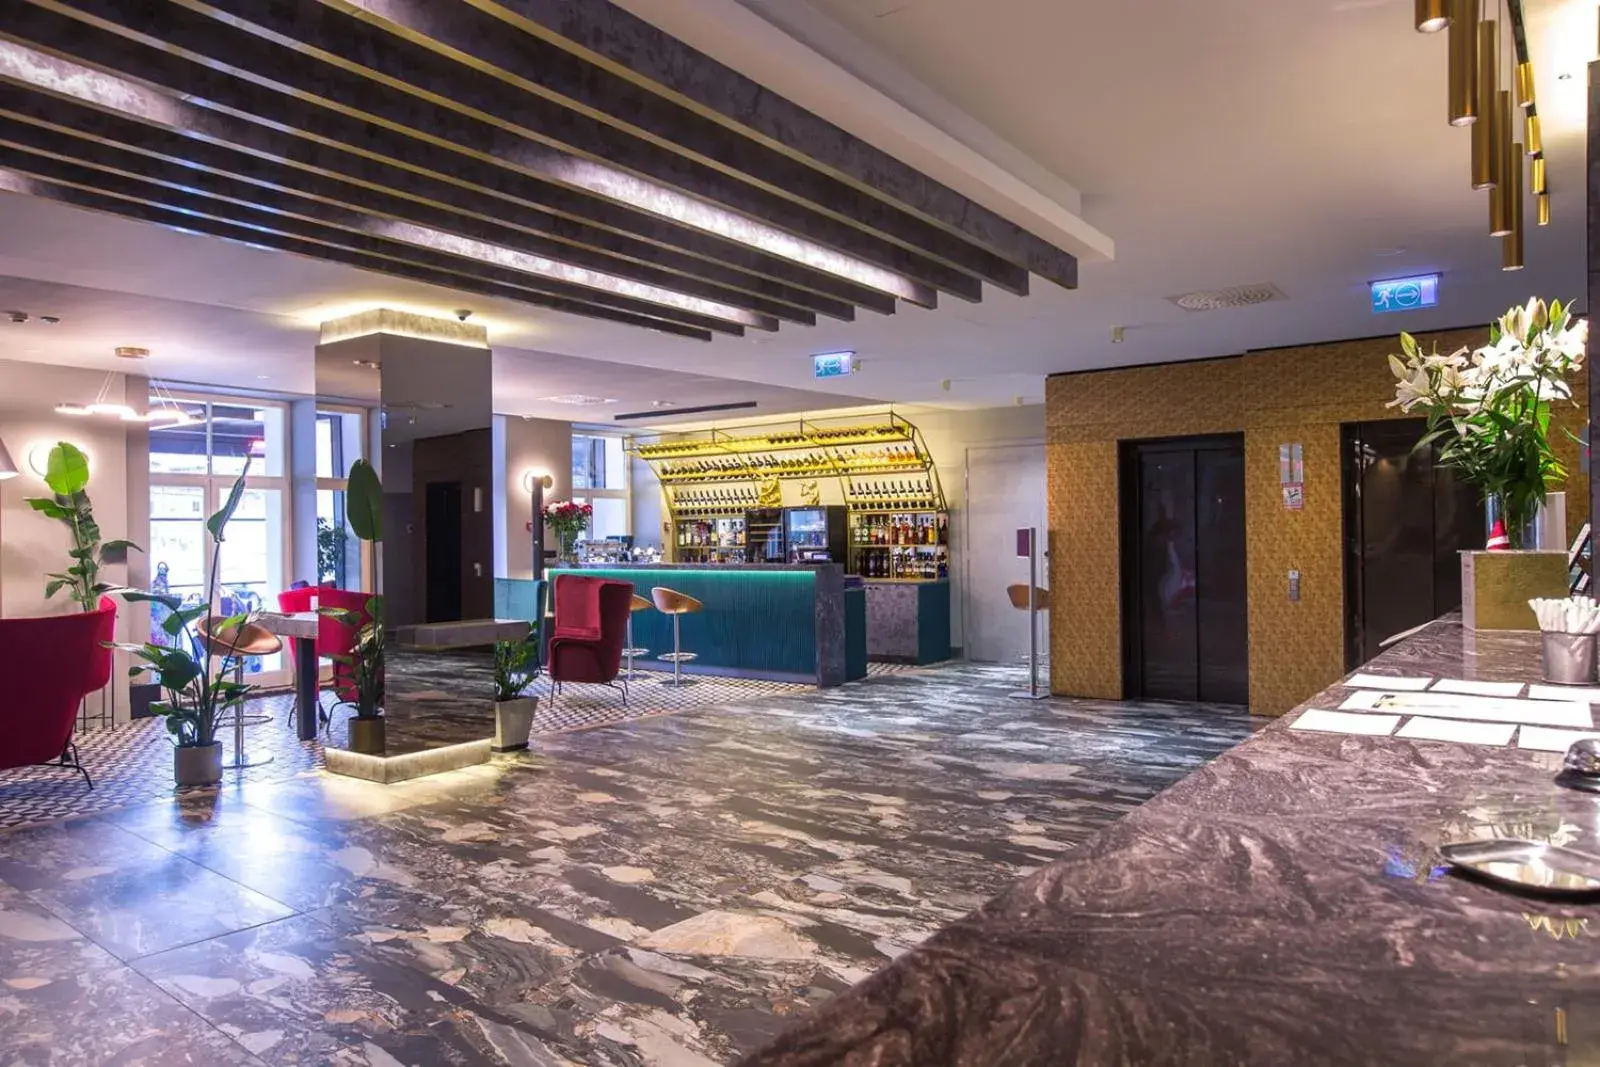 Lobby or reception in Mercure Riga Centre